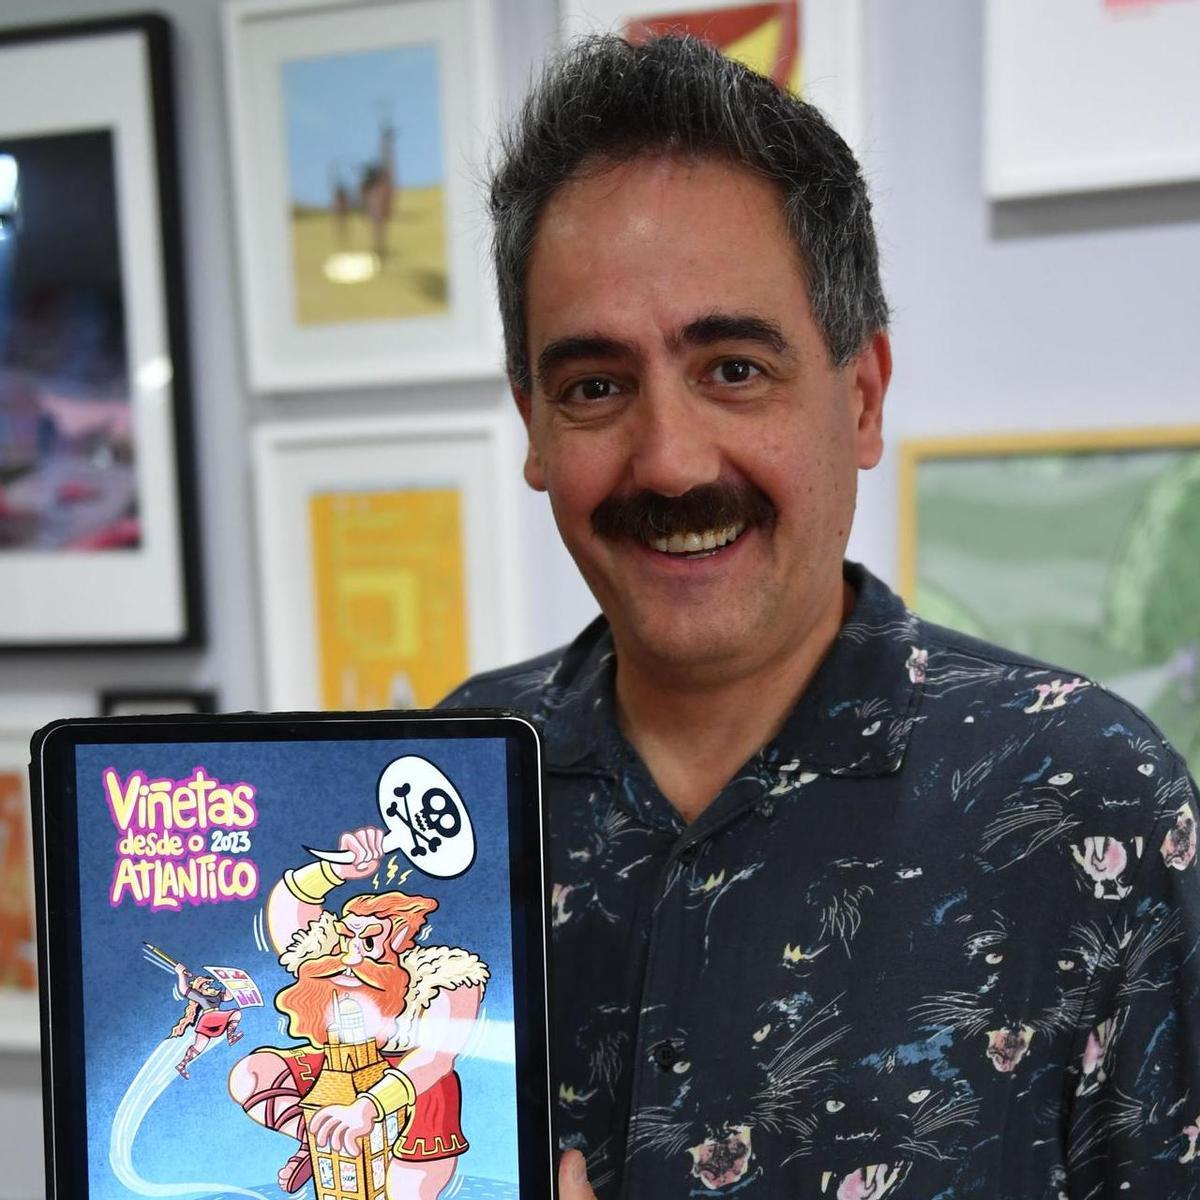 Manel Cráneo, el nuevo director de Viñetas desde o Atlántico, con el cartel del año pasado, que elaboró.